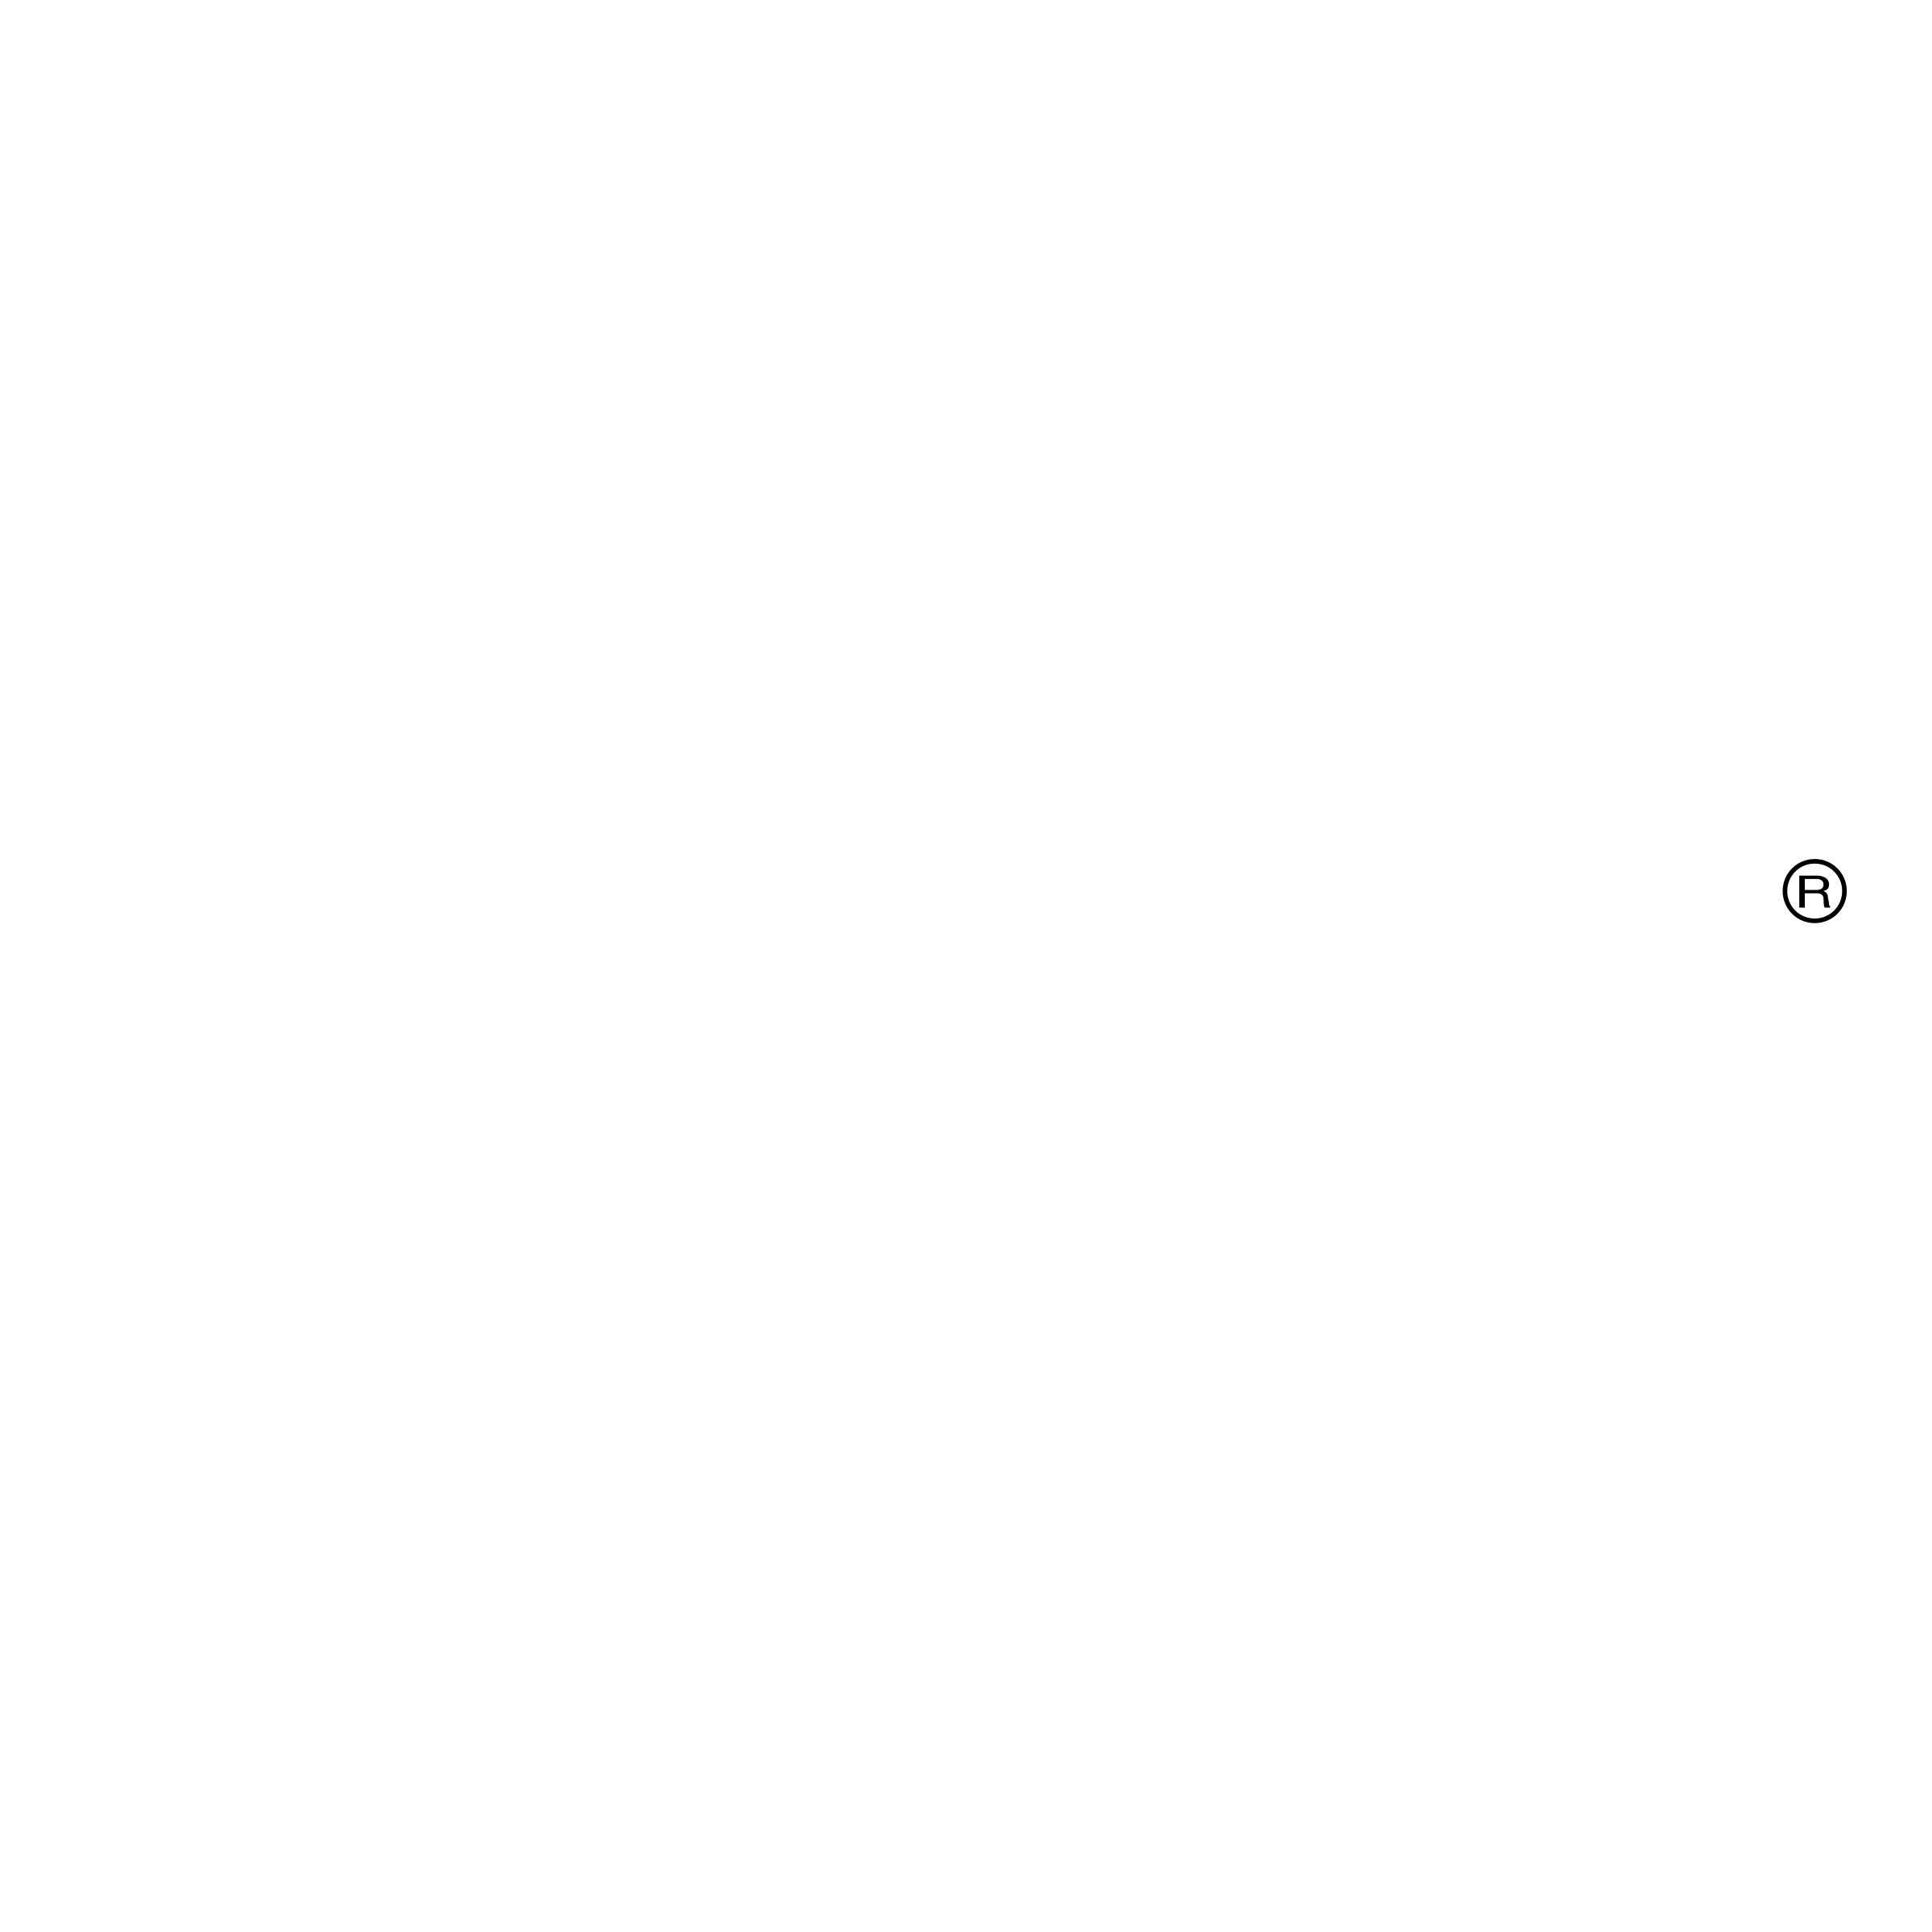 Fiskars Logo - Fiskars Logo PNG Transparent & SVG Vector